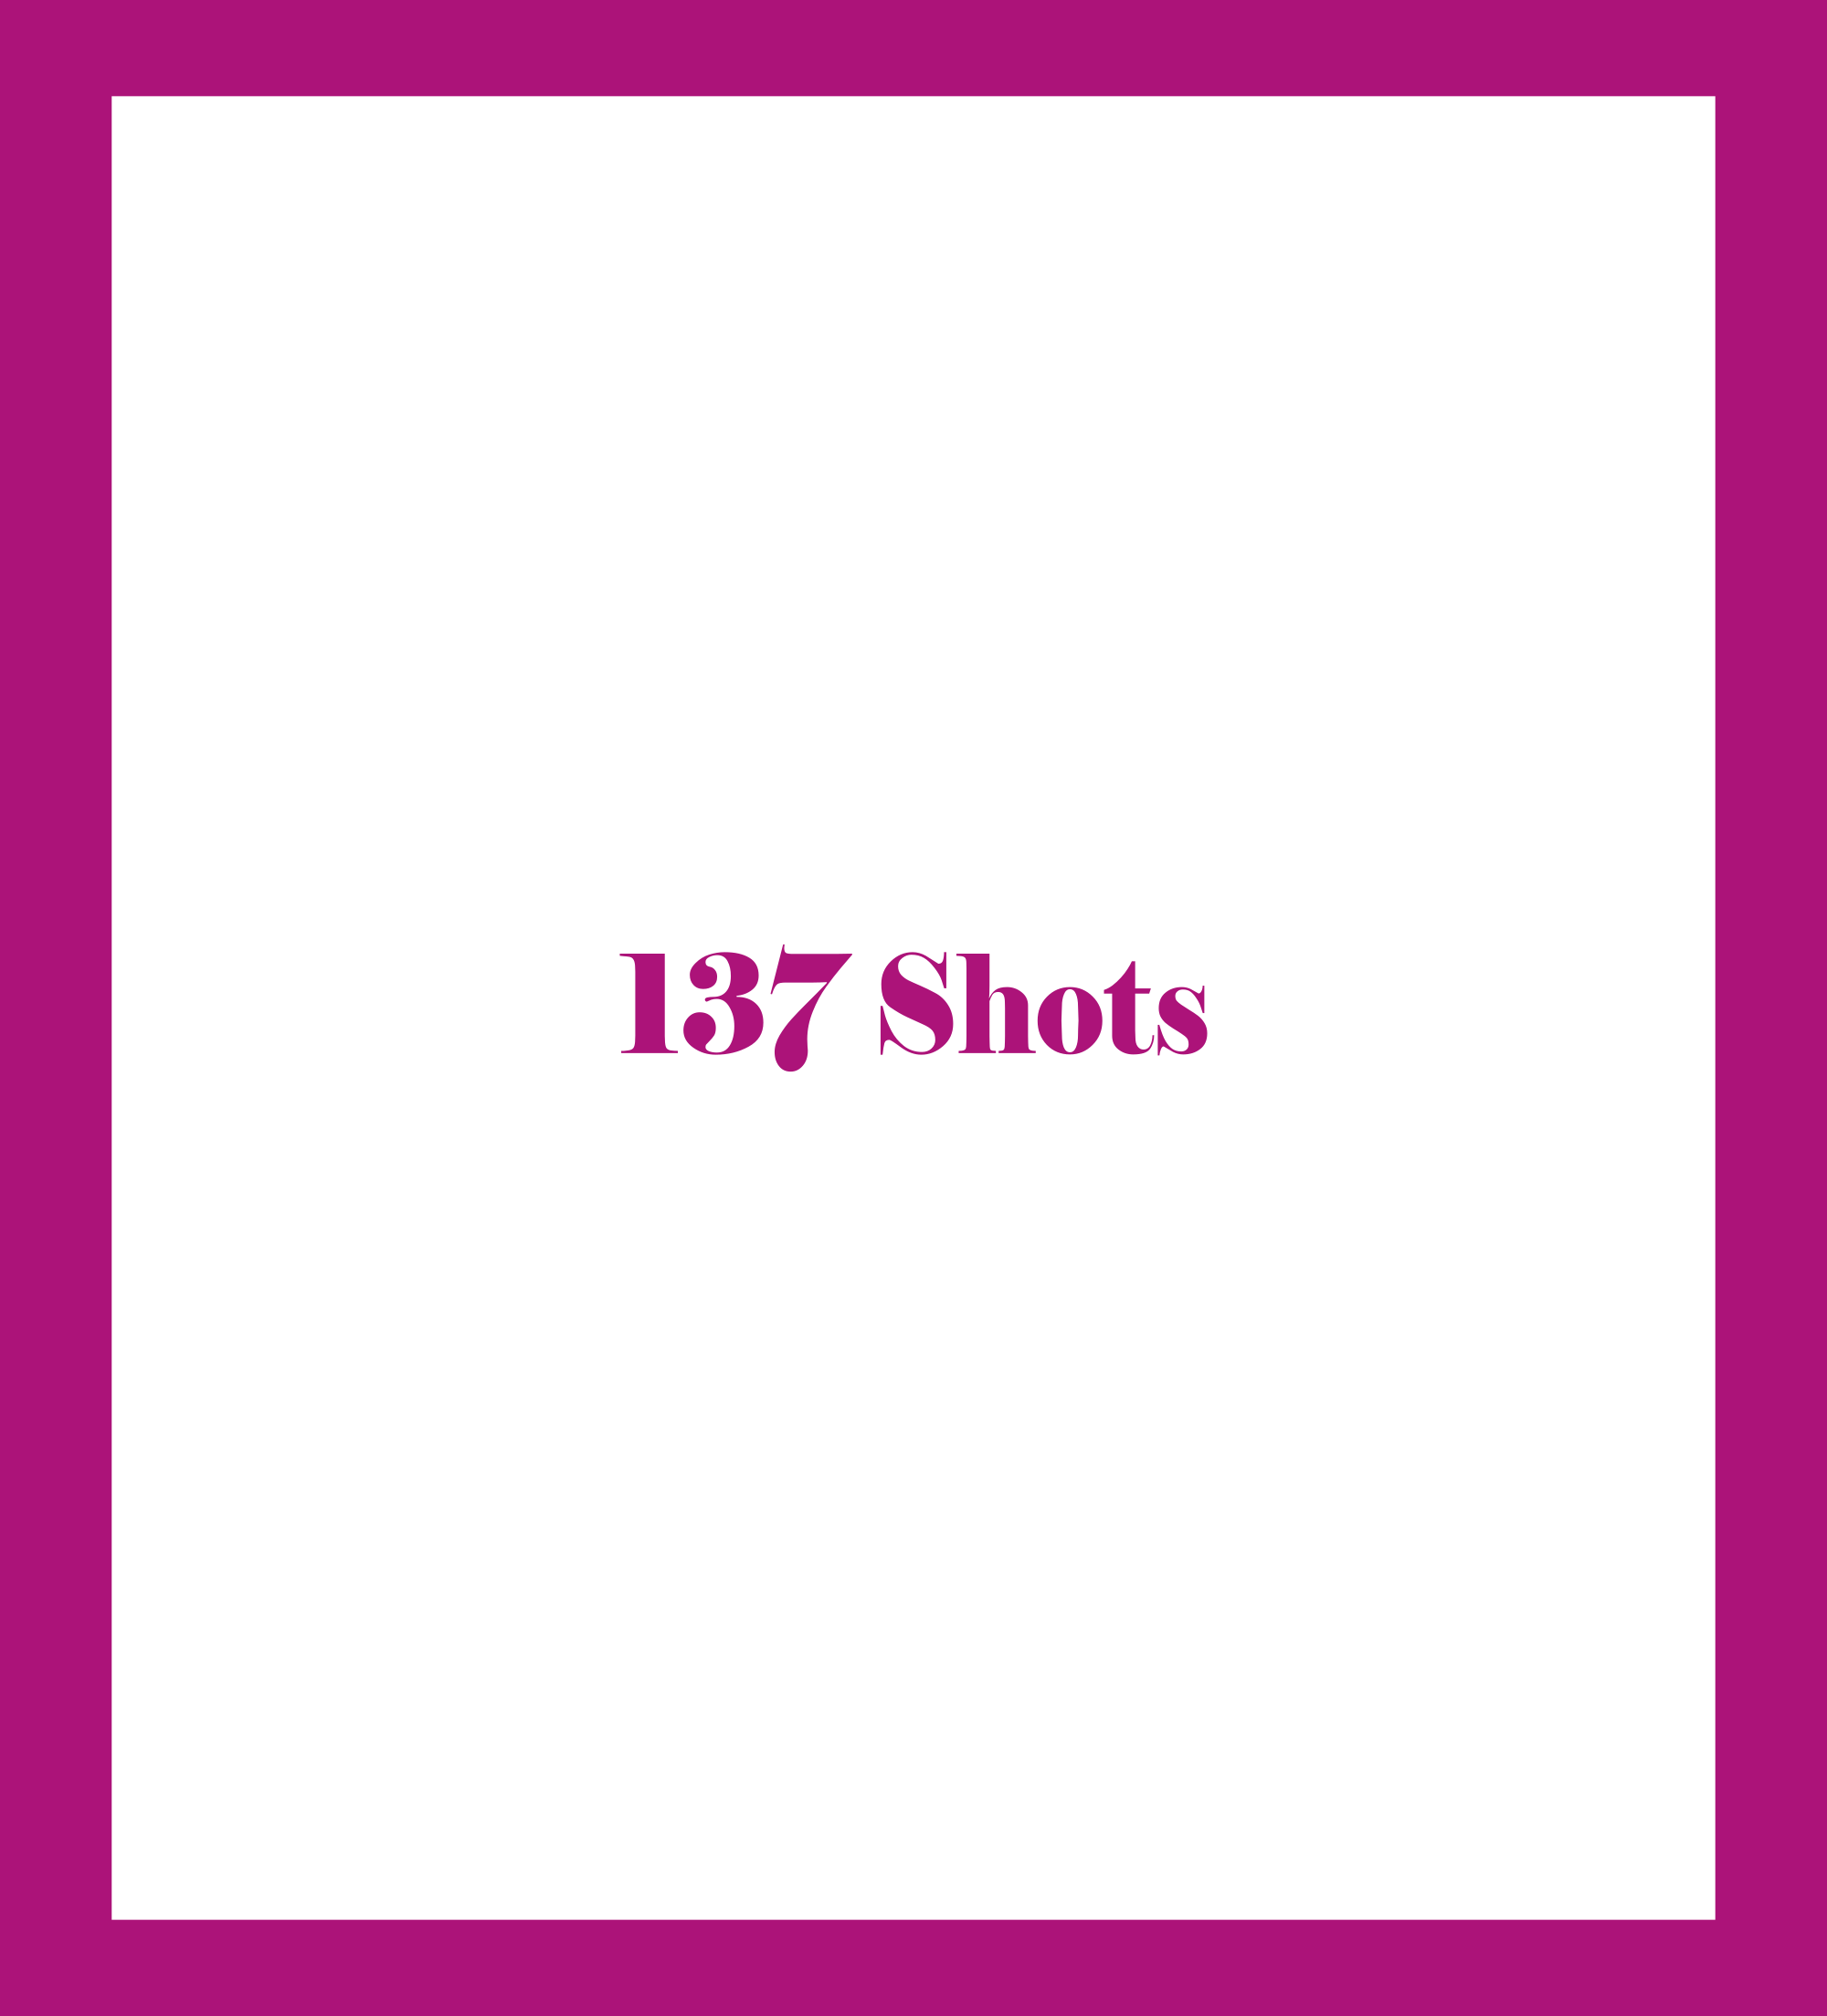 Caratula de 137 Shots (137 Shots) 